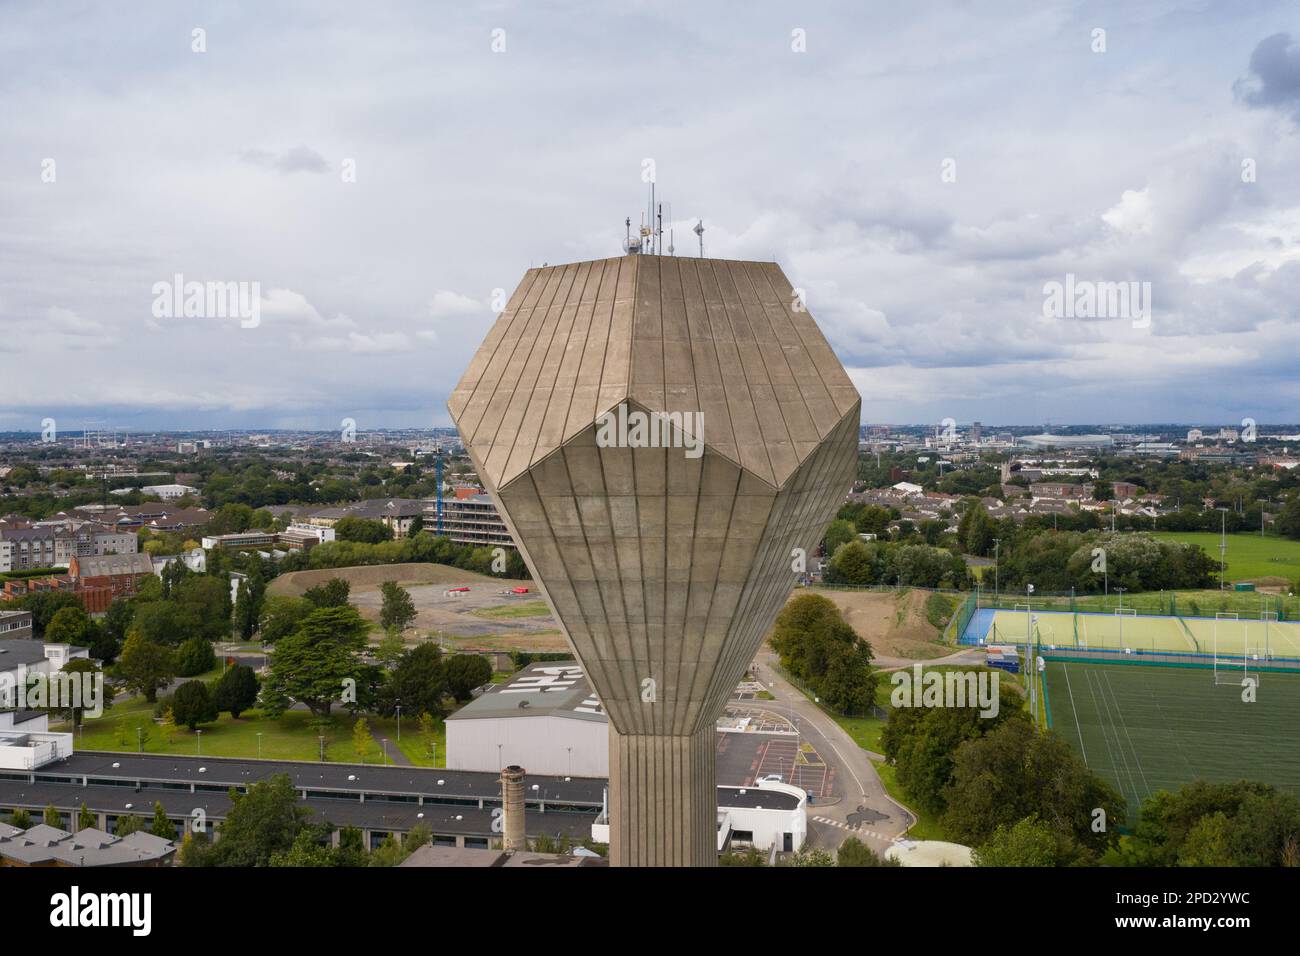 Dublino / Irlanda : veduta aerea della torre dell'acqua UCD a forma di dodecaedro o precisamente - piritoedro. Esempio di architettura brutalista irlandese Foto Stock